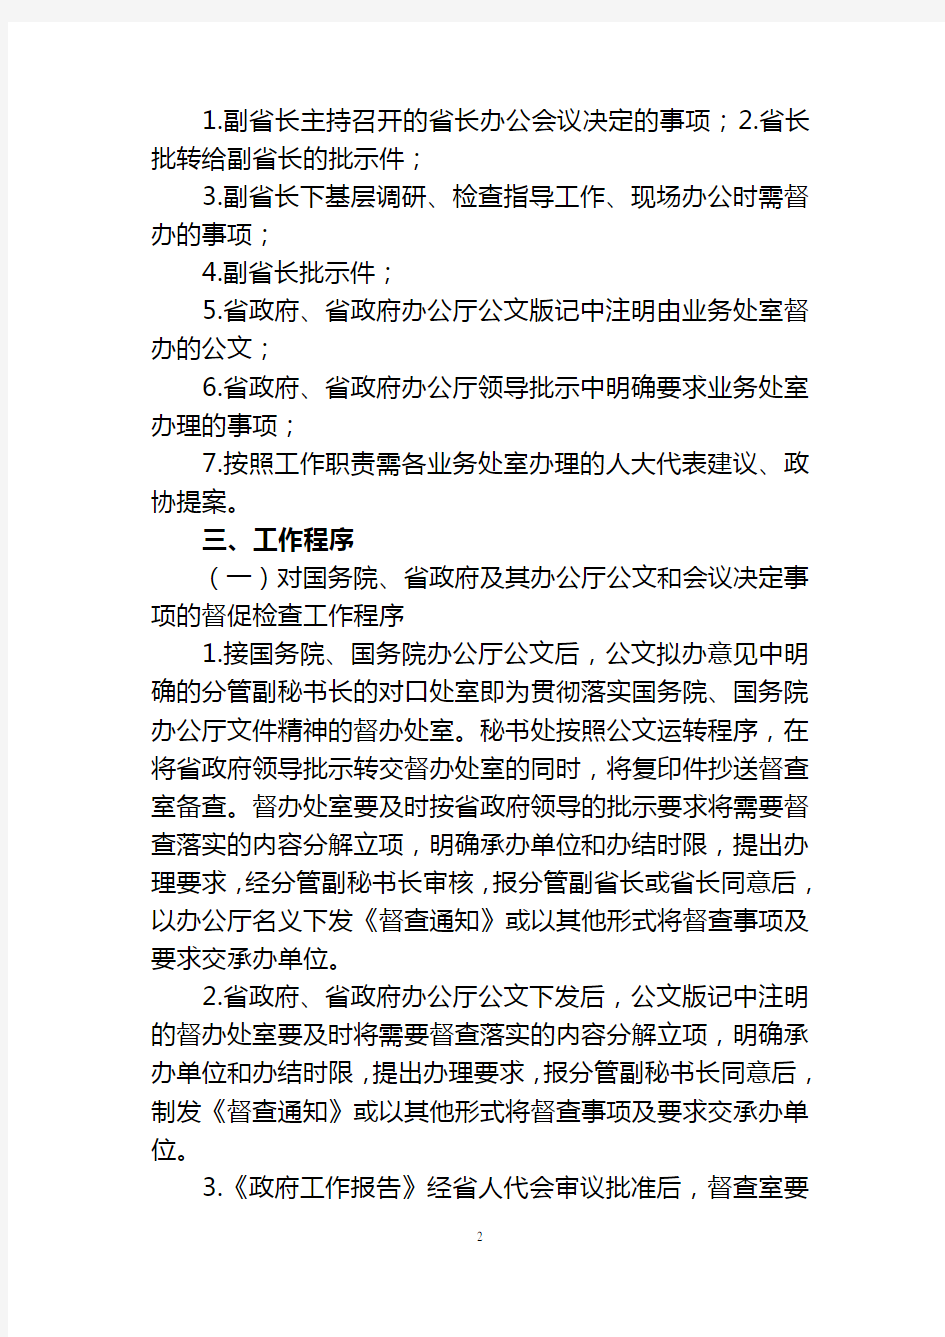 河南省人民政府办公厅督促检查工作制度